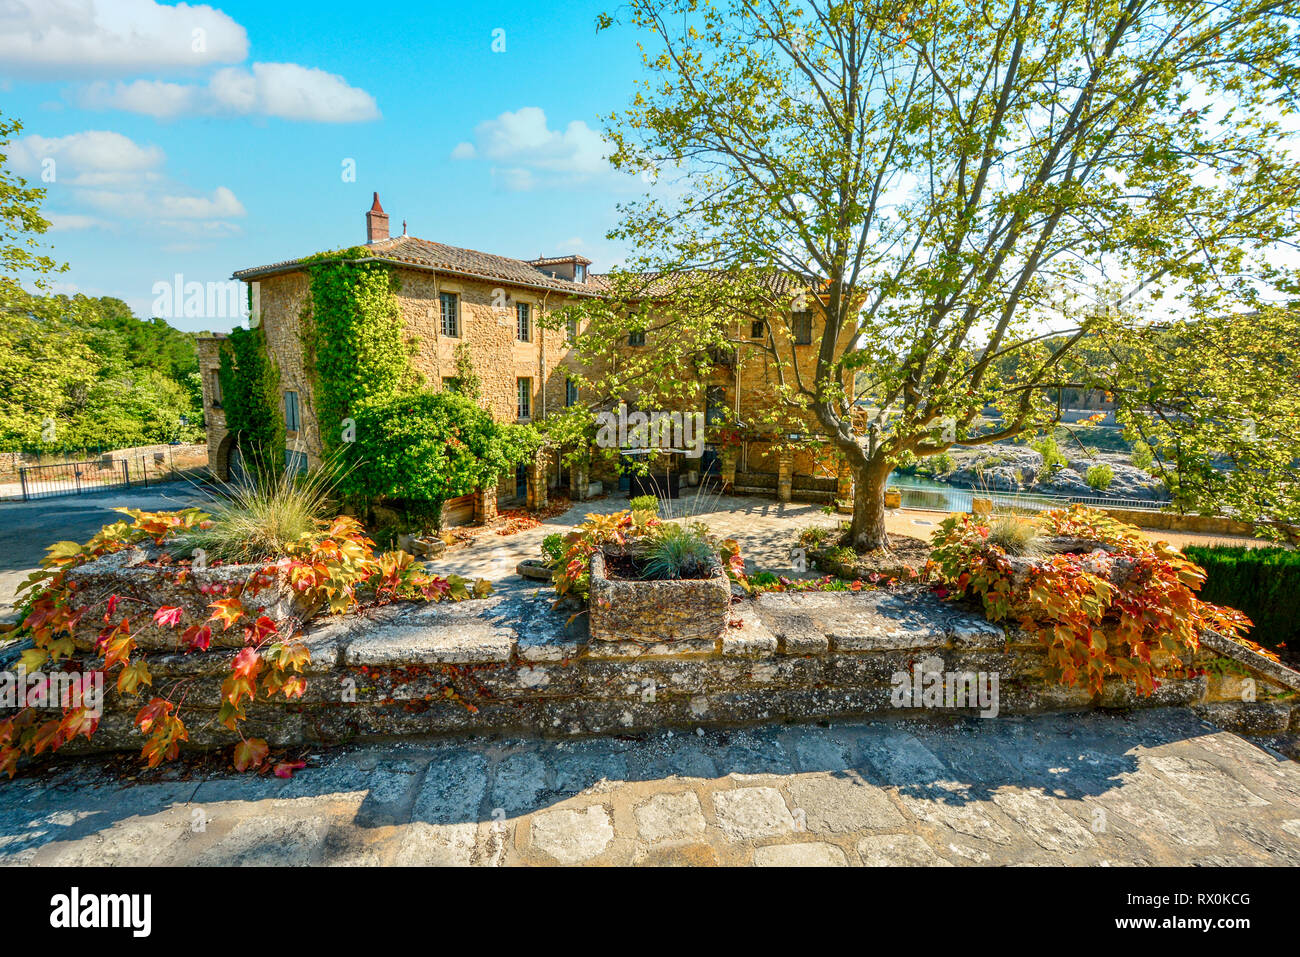 Eine große Villa am Ufer des Flusses Gardon in der französischen Landschaft im Süden Frankreichs in der Nähe des Pont du Gard in der Provence Region. Stockfoto